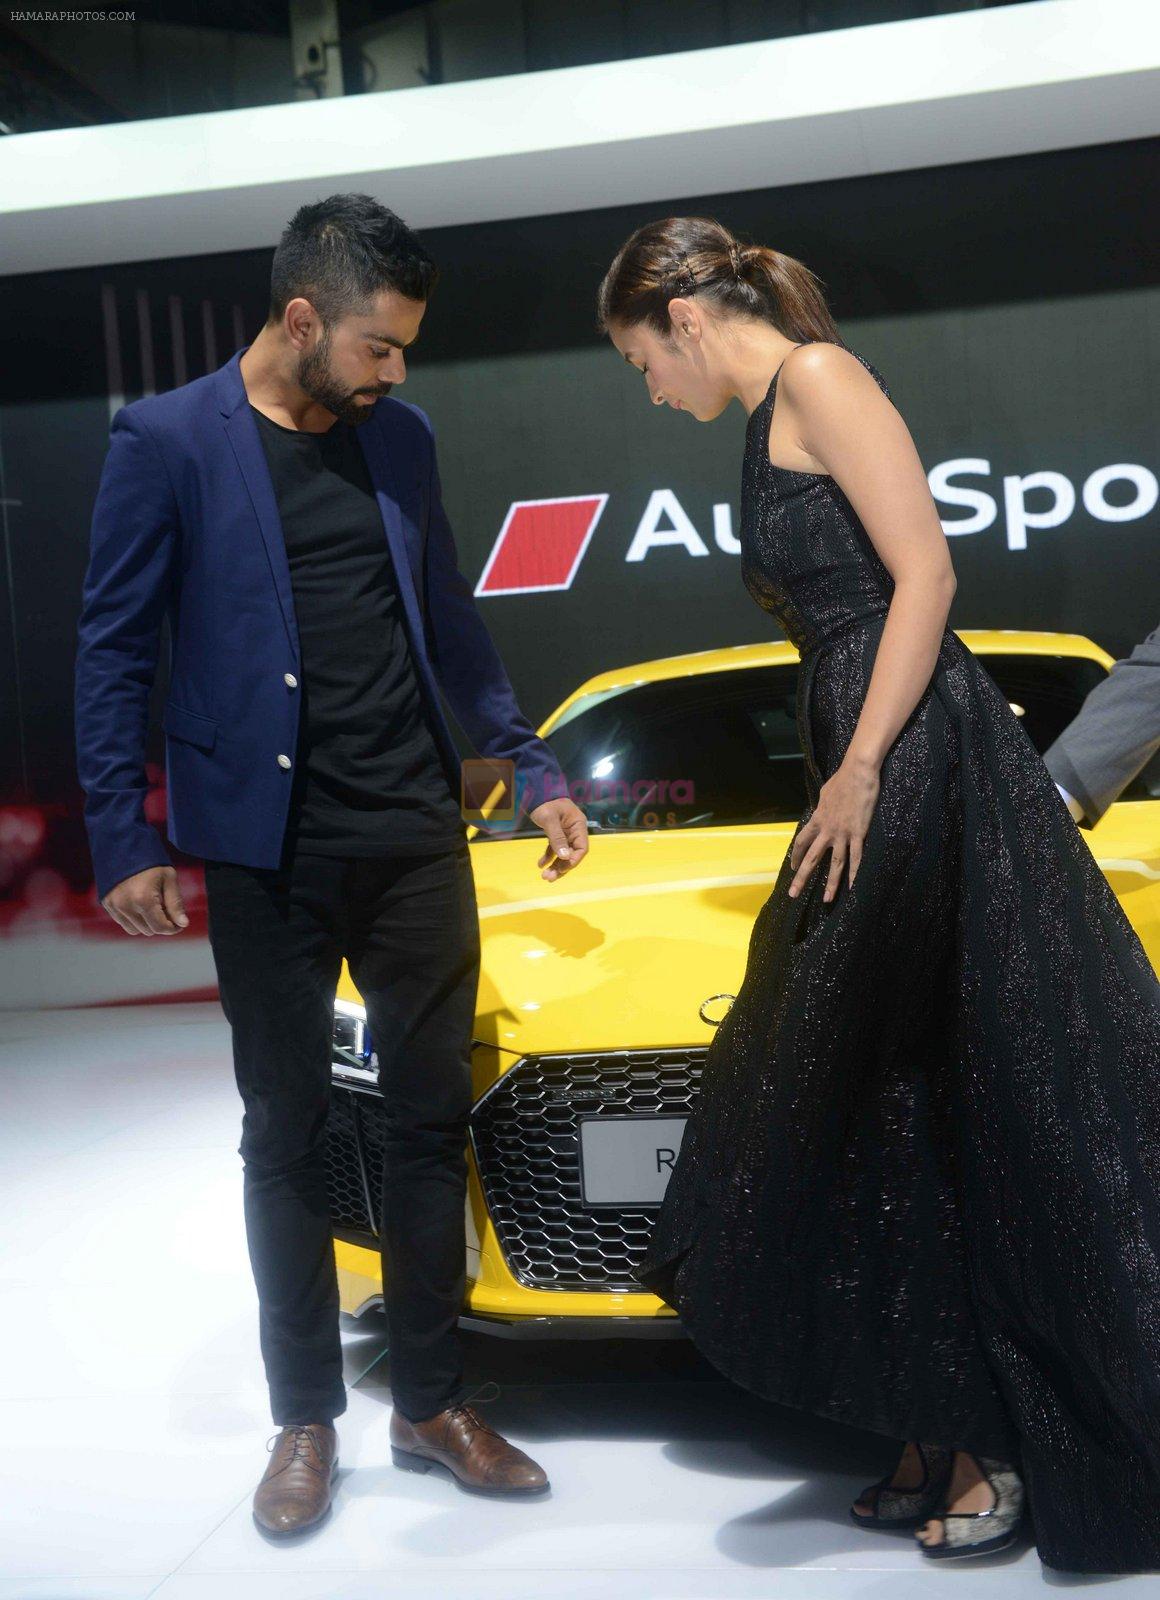 Alia BHatt, Virat Kohli unveil the new Audi R8 at Auto Expo 2016 on 3rd Feb 2016